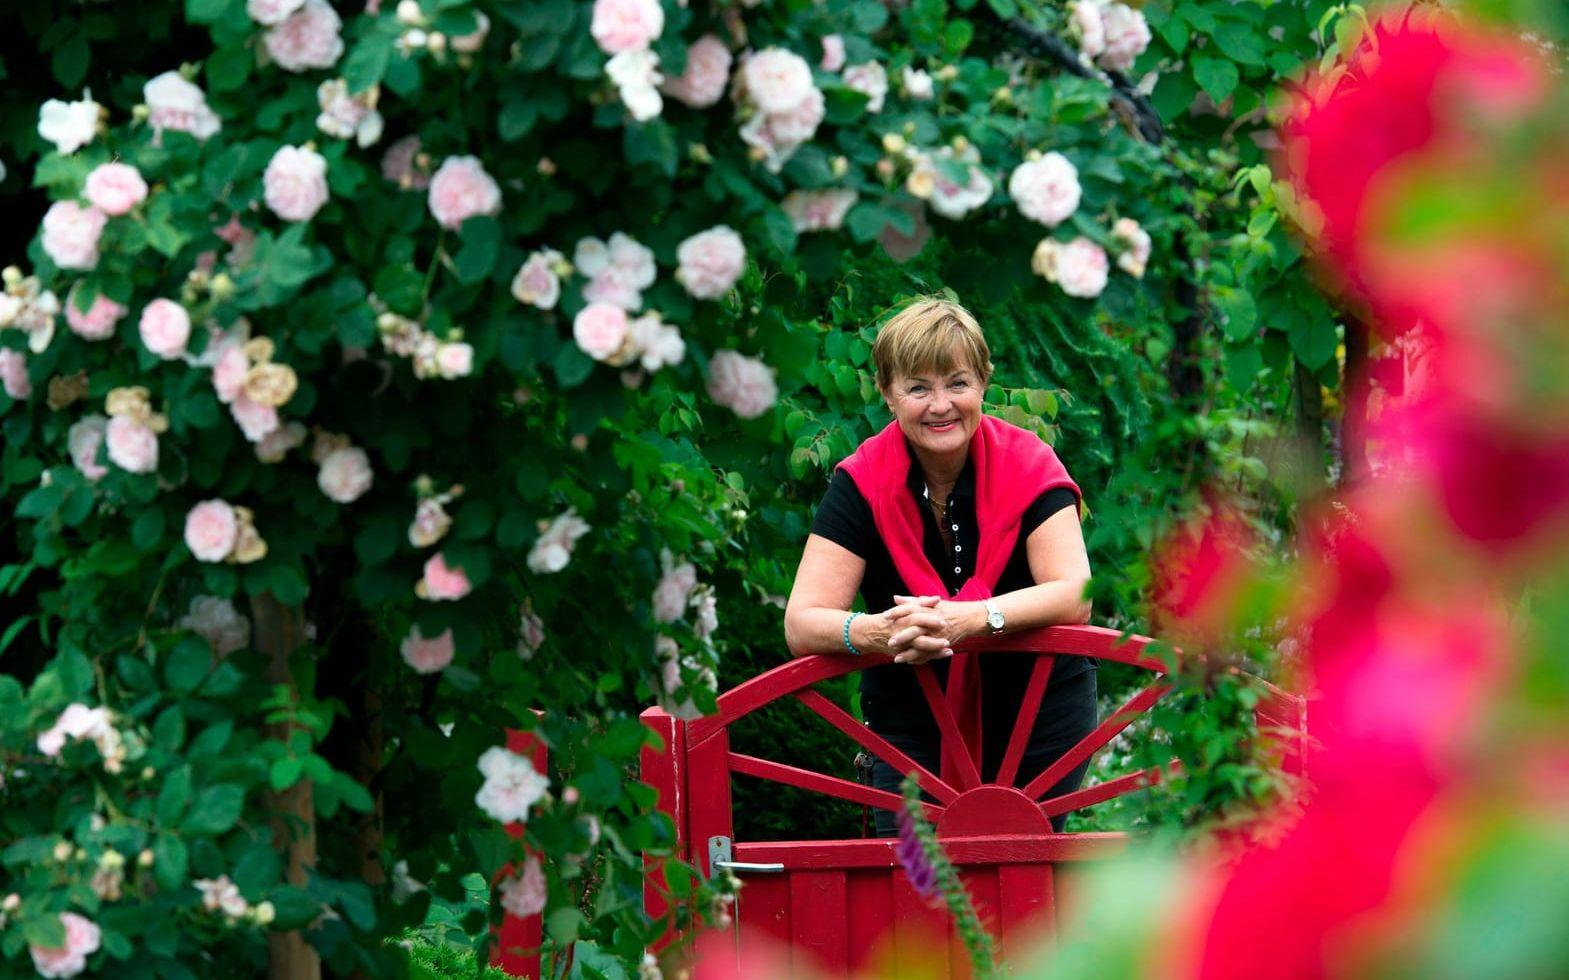 Välkomna. Marita Neiderts trädgård bjuder på grönska och väldoft, inte minst rosen Maidens Blush som dignar av blommor sommartid.